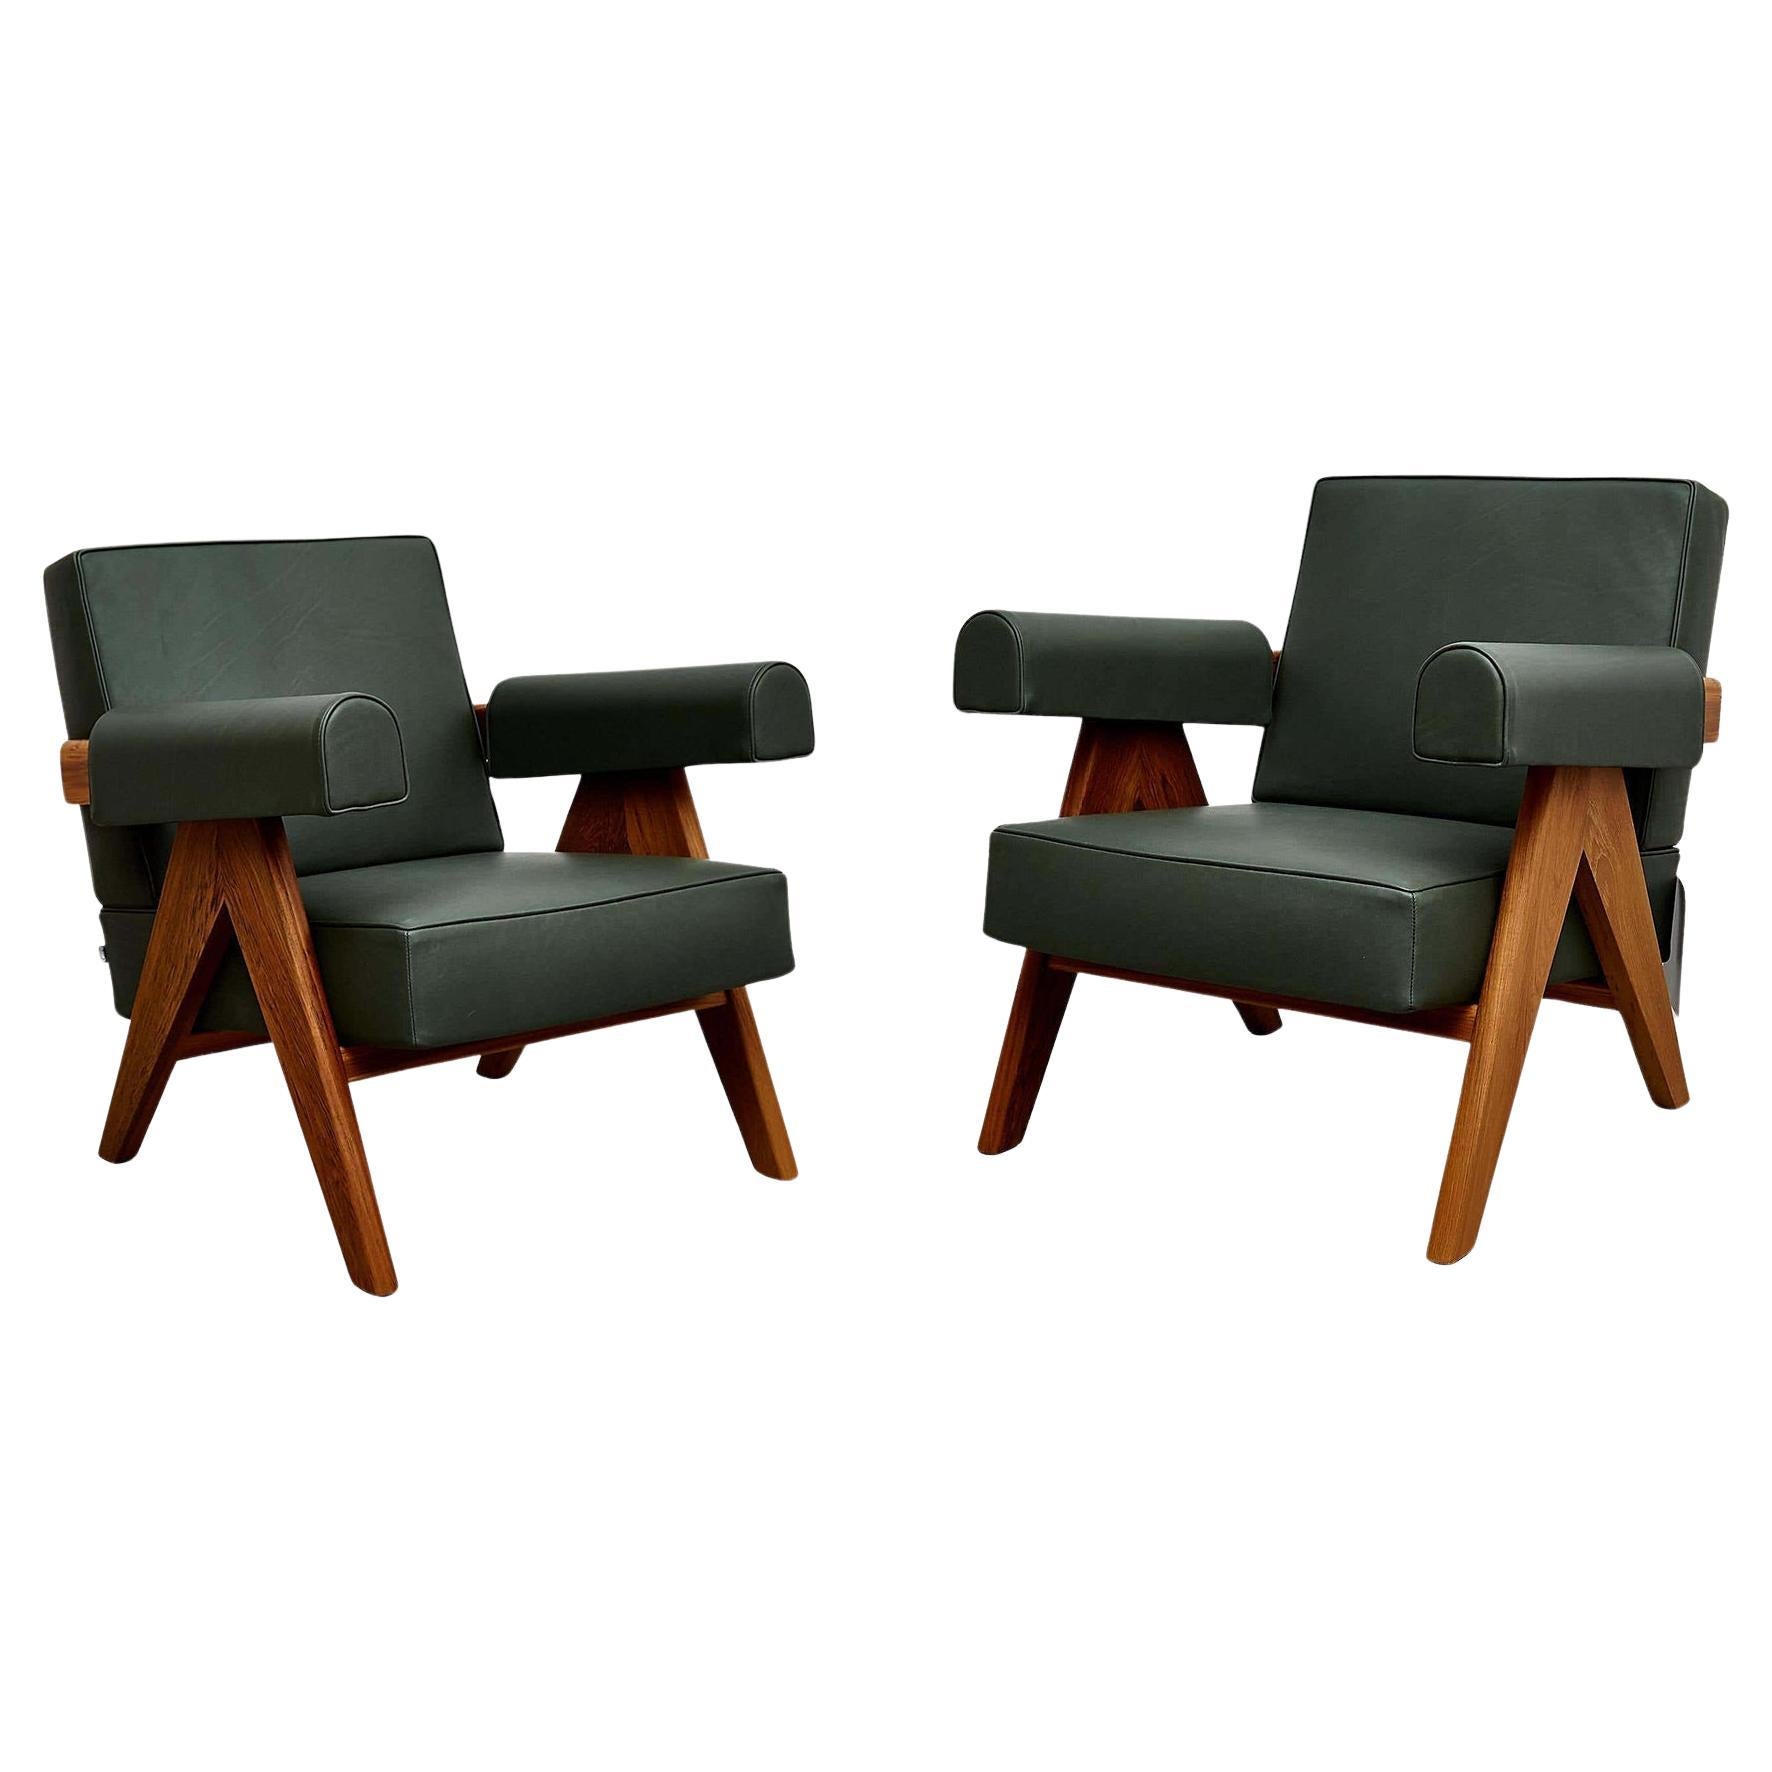 Gönnen Sie sich raffinierten Komfort und zeitlose Eleganz mit diesem Set aus zwei Pierre Jeanneret-Sesseln, die ursprünglich um 1950 entworfen und 2019 von Cassina in Italien neu aufgelegt wurden. Tauchen Sie ein in das ikonische Design, bei dem